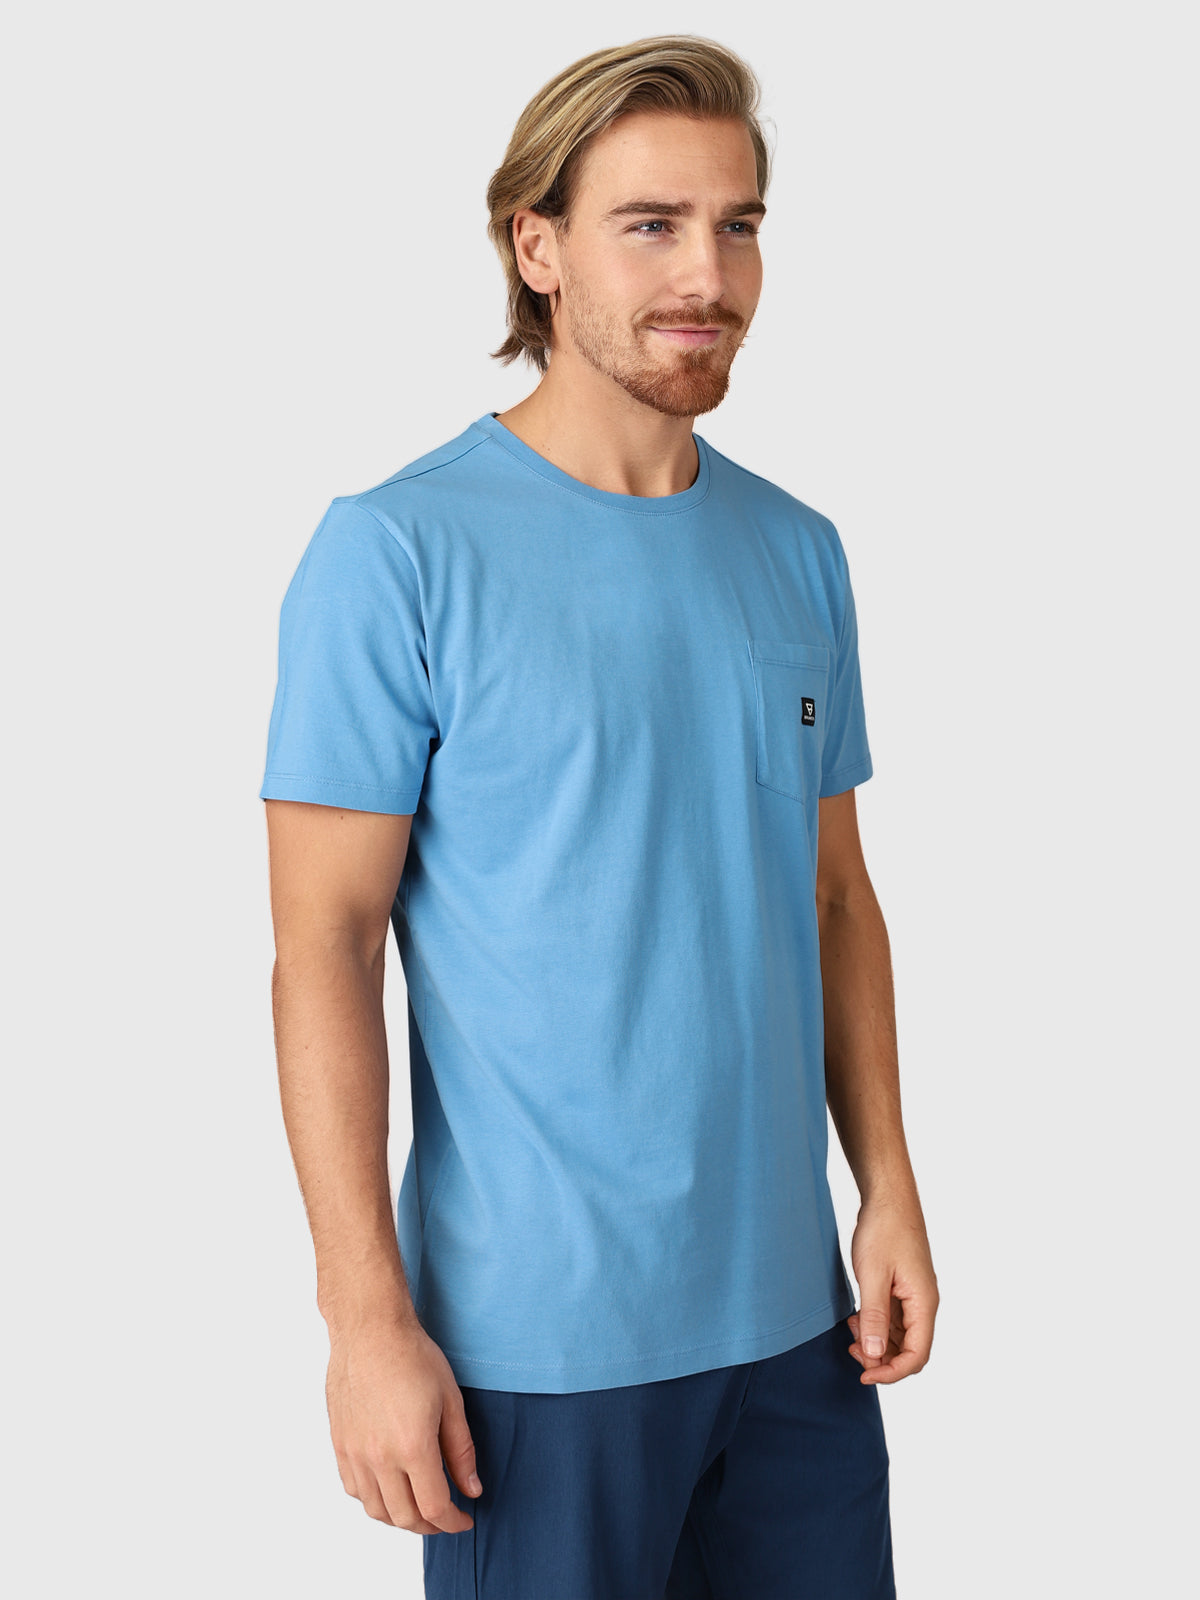 Axle Herren T-Shirt | Blau